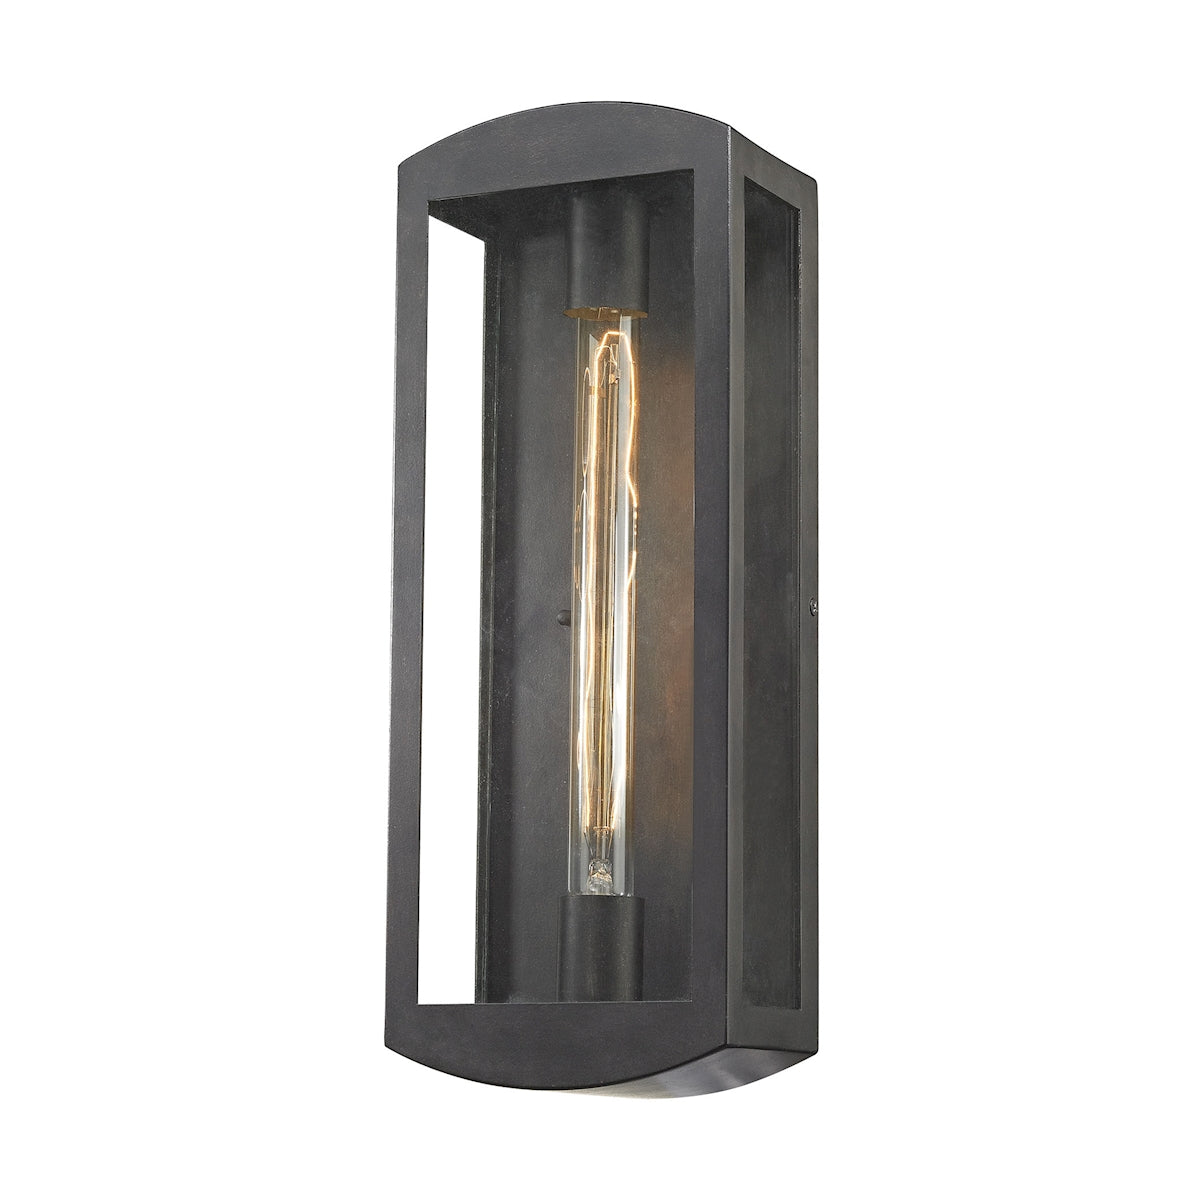 ELK Lighting 45171/1 Trenton 1-Light Outdoor Sconce in Blackened Bronze